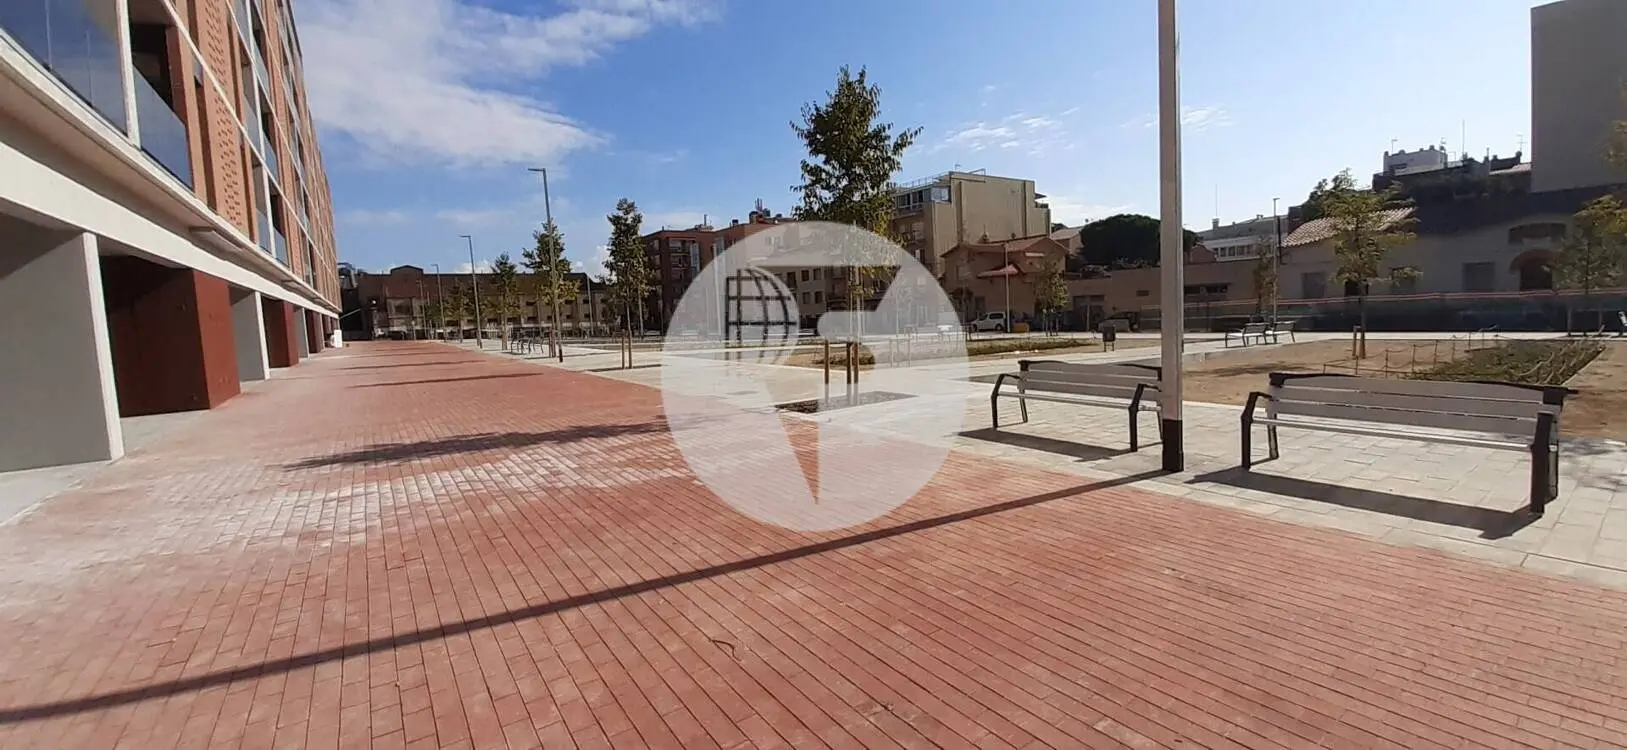 Local comercial d'Obra Nova a Sabadell IE-220756 2